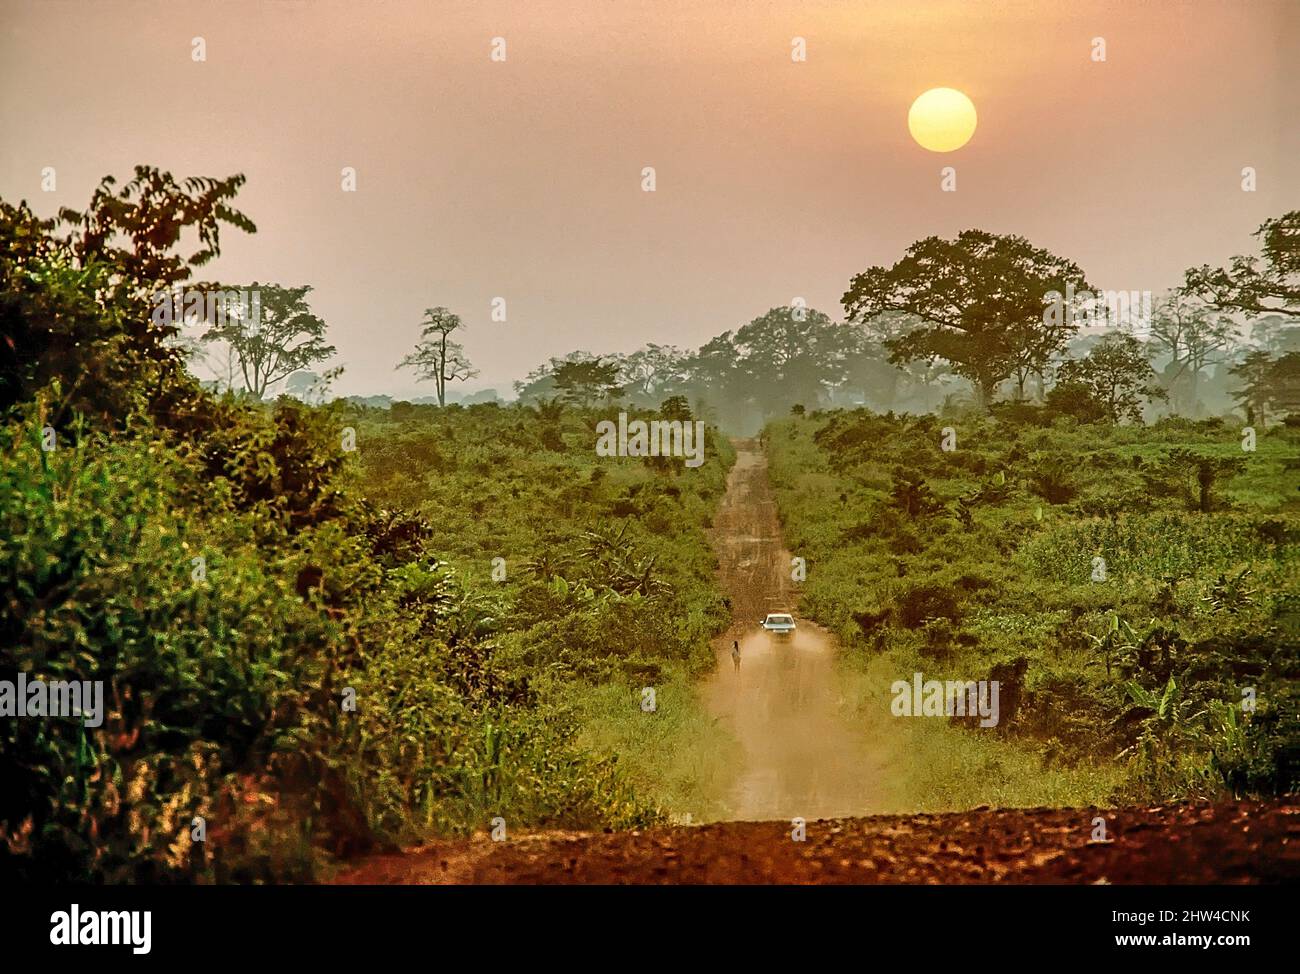 Route de la poussière à travers le brouet au Ghana, en Afrique de l'Ouest. Banque D'Images